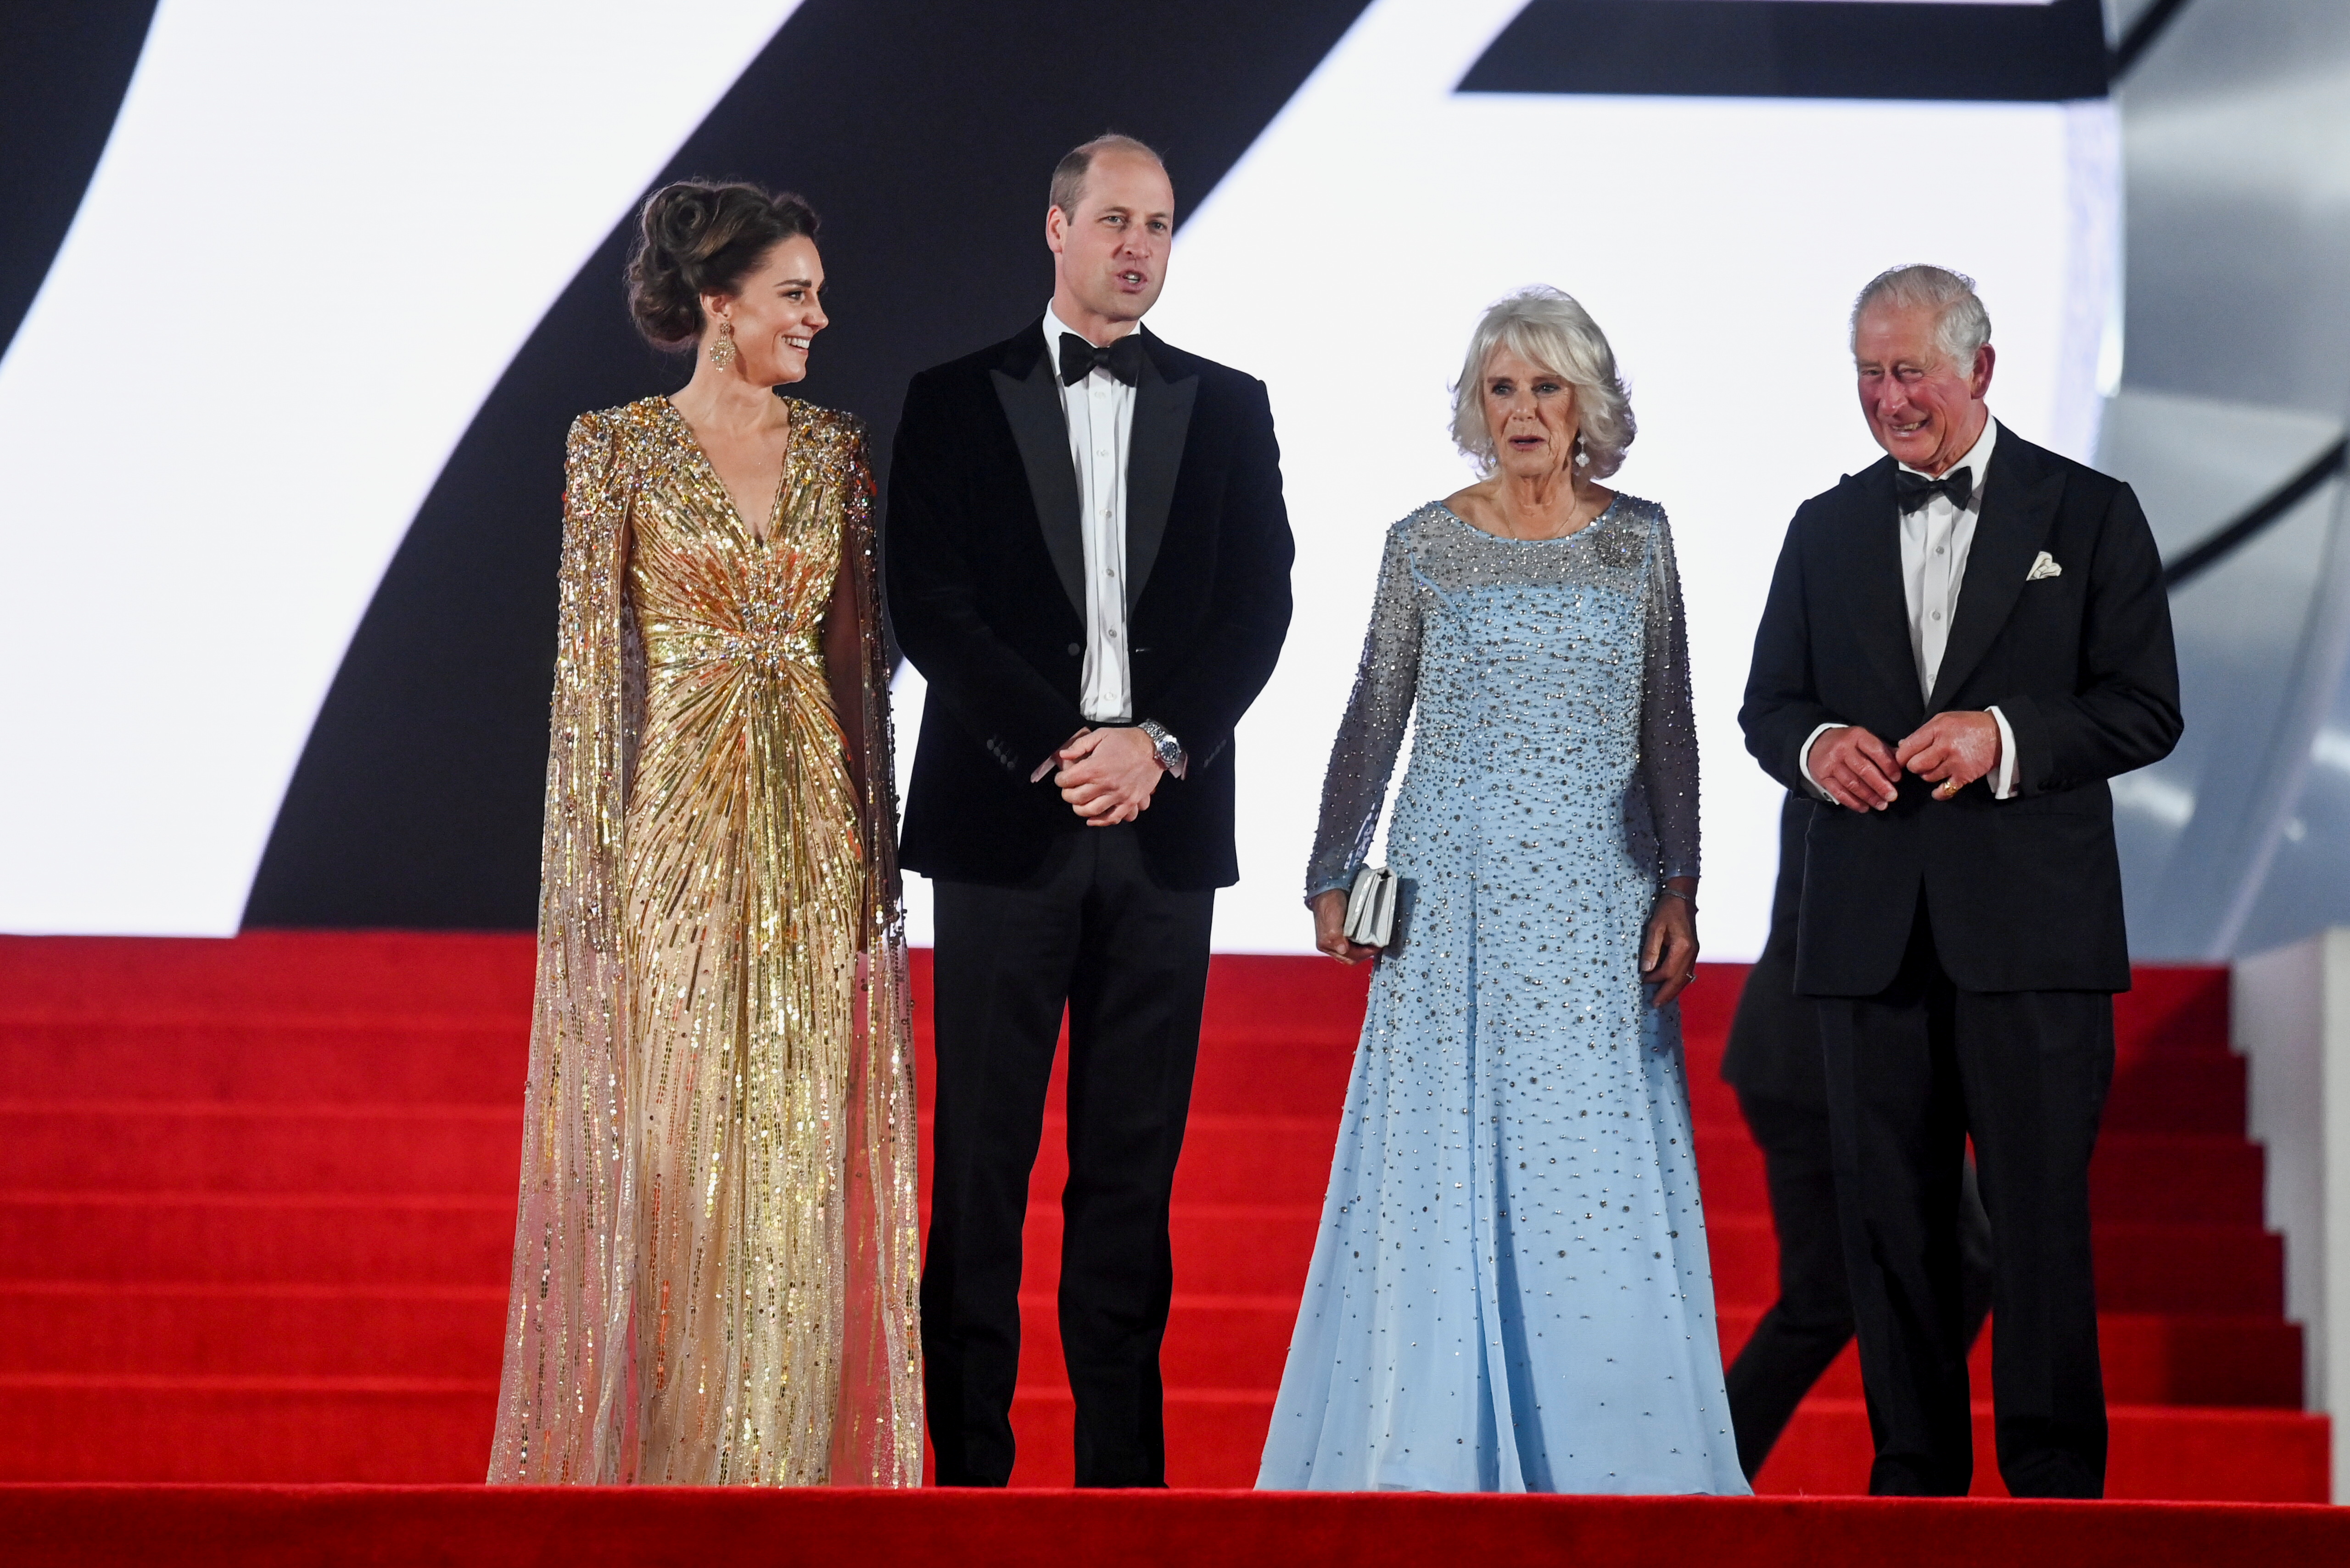 Los duques de Sussex y el rey Carlos y la reina consorte Camilla en la premiere de "No Time To Die" en Londres (Reuters)